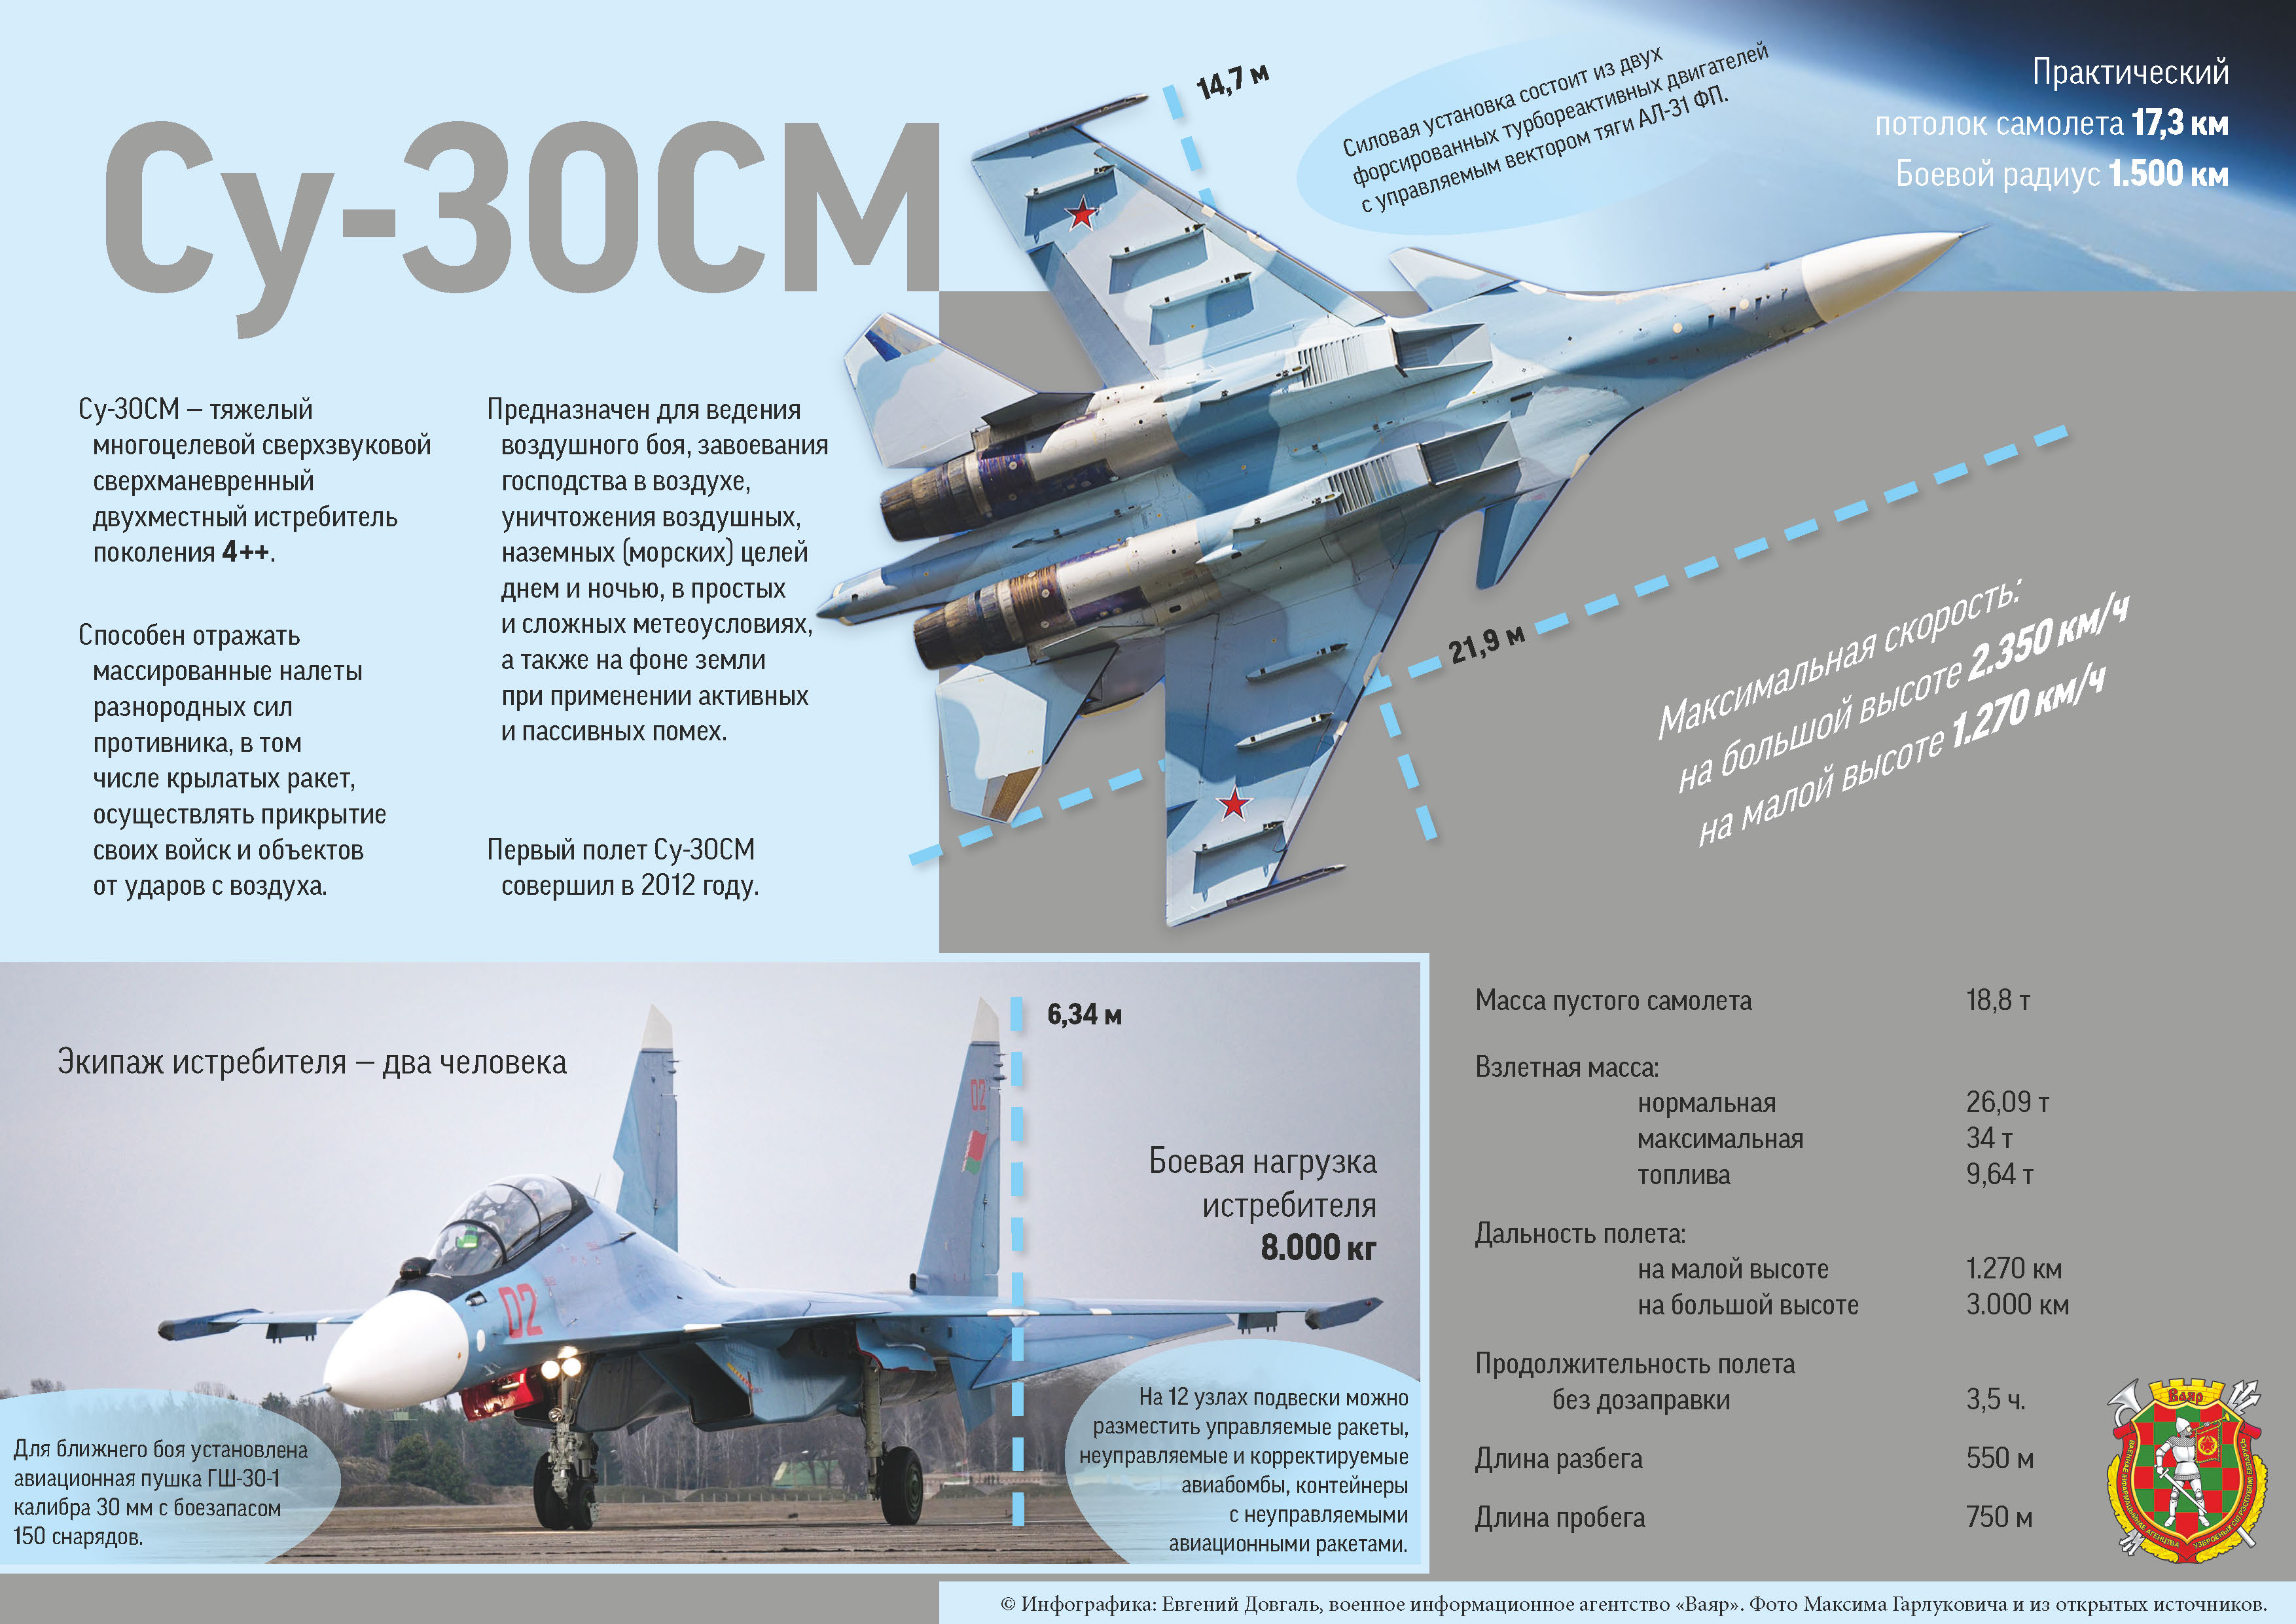 Характеристики истребителя су. Истребитель Су-30см вооружение. Самолёт Су-30 технические характеристики. Летные характеристики Су 30. Су-30см2 характеристики технические.